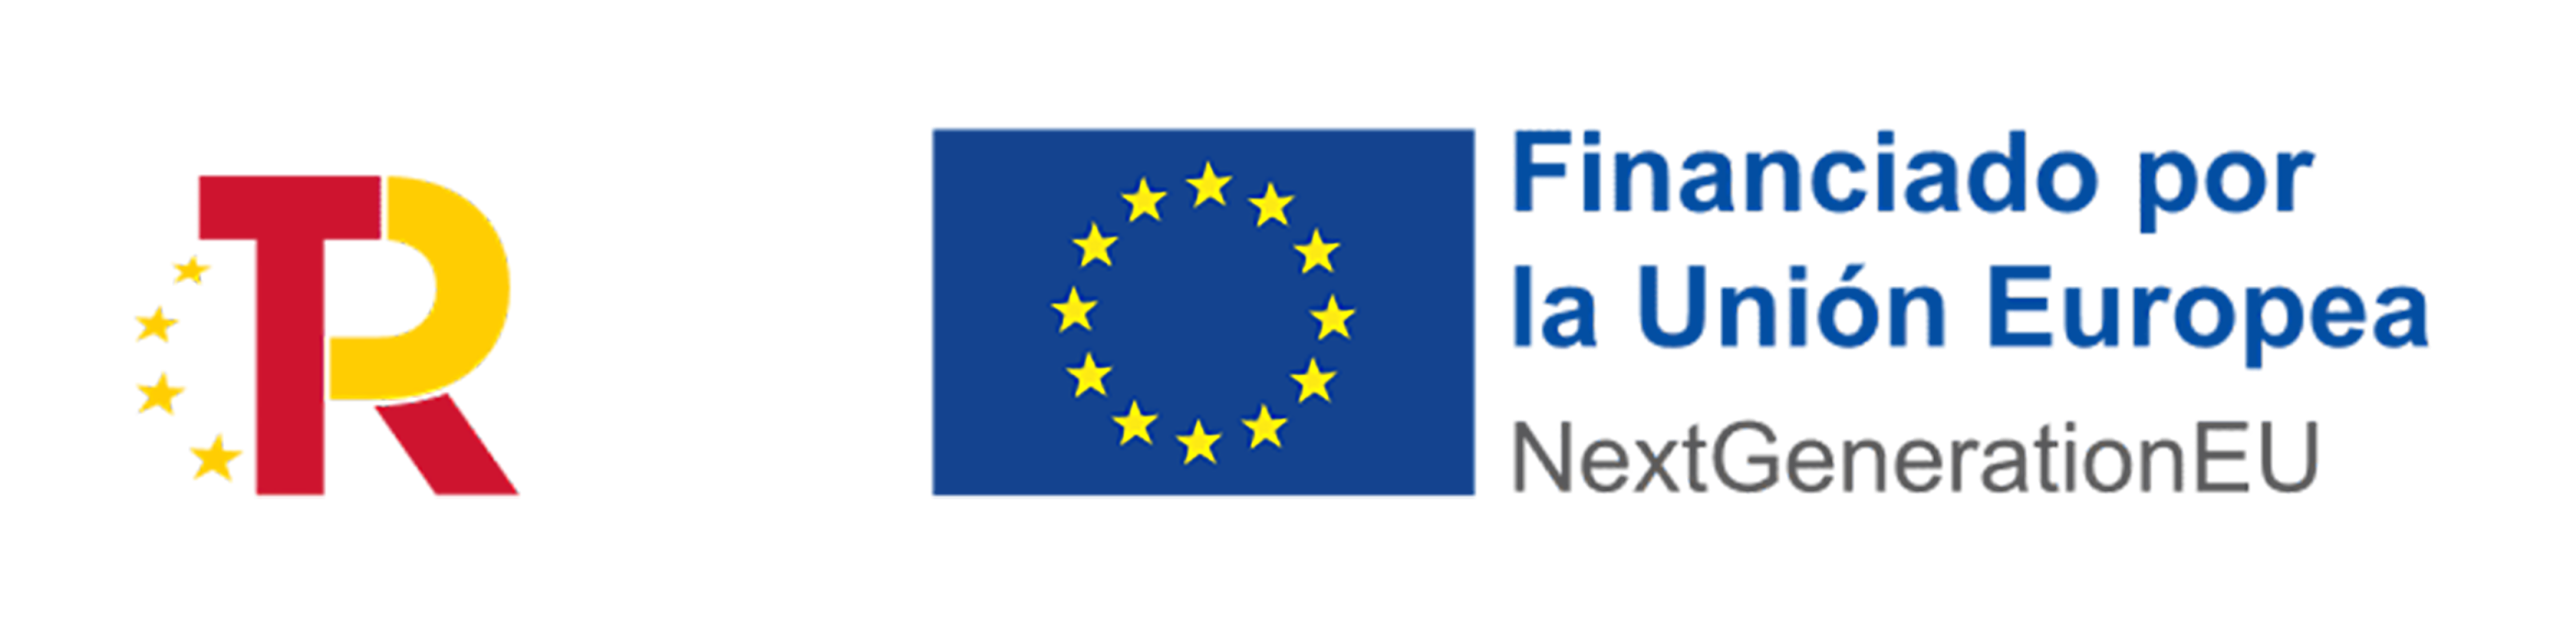 logo-tr-union-europea